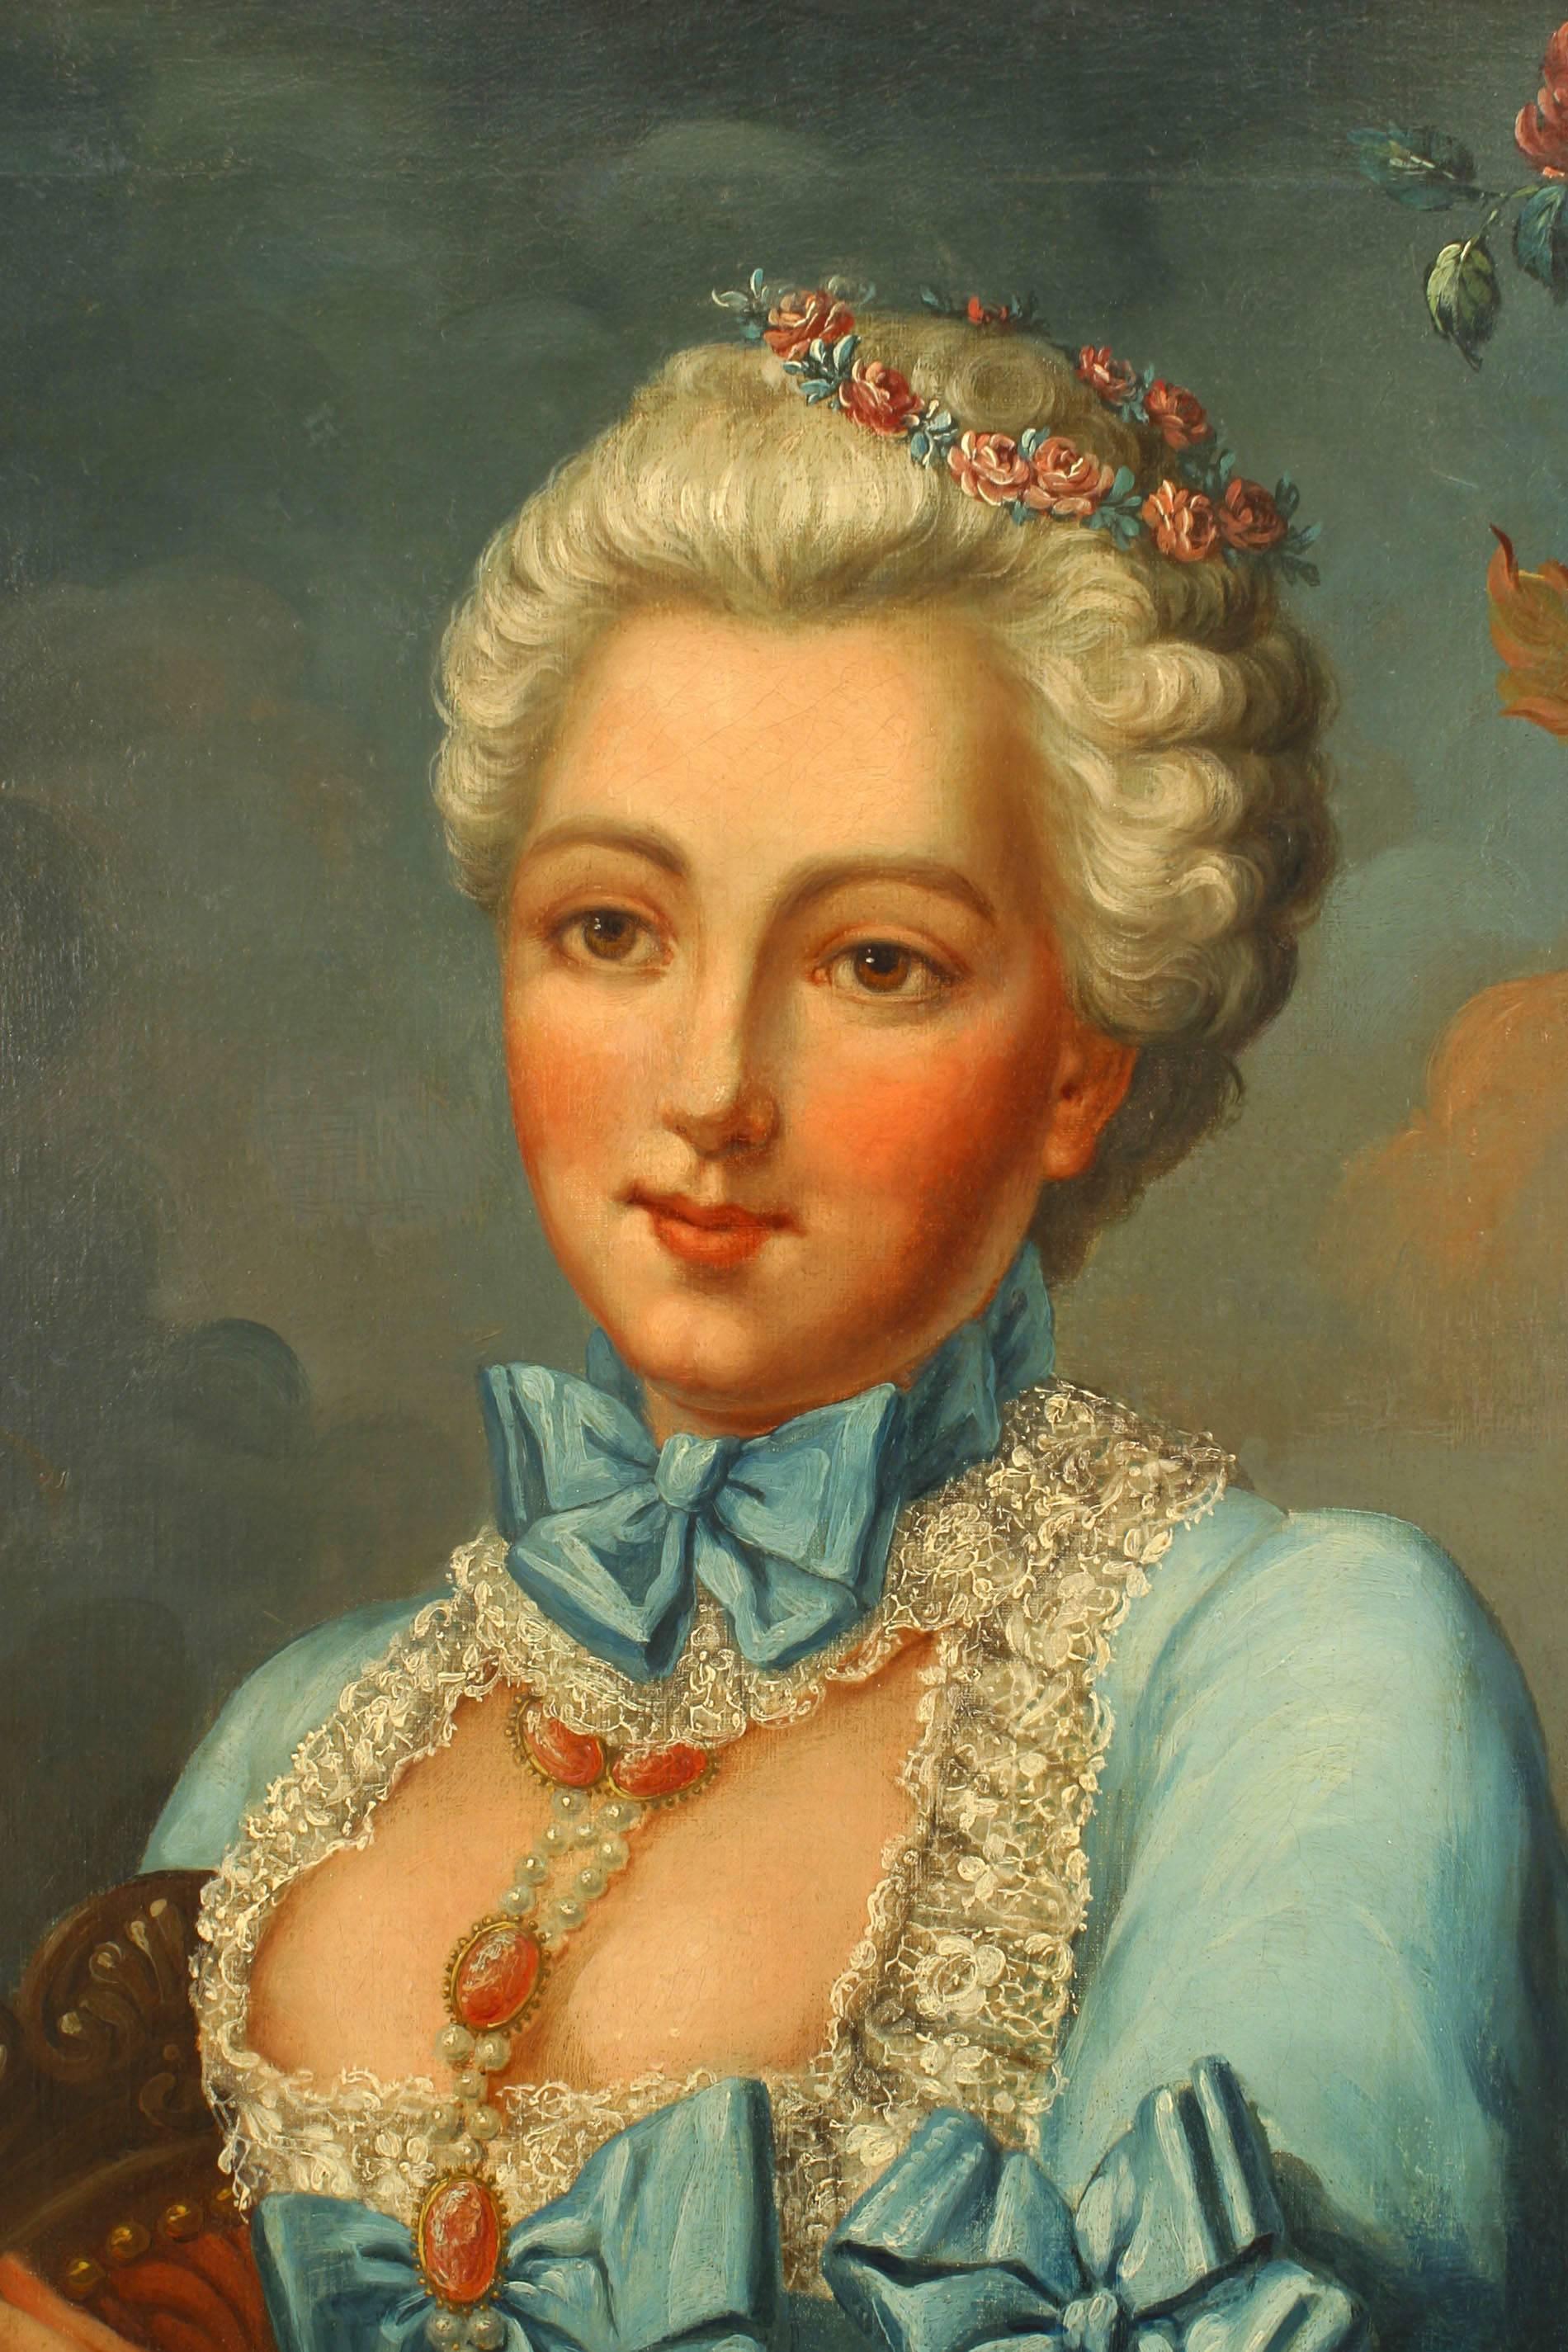 Französisches Louis XVI (18. Jh.) Ölgemälde Porträt einer Dame in blauem Kleid mit Spitzenbesatz und Blumen im Haar, die ein Buch hält, sitzend neben einer großen Urne in einem gestreiften geschnitzten Rahmen (att: NATTIER)
